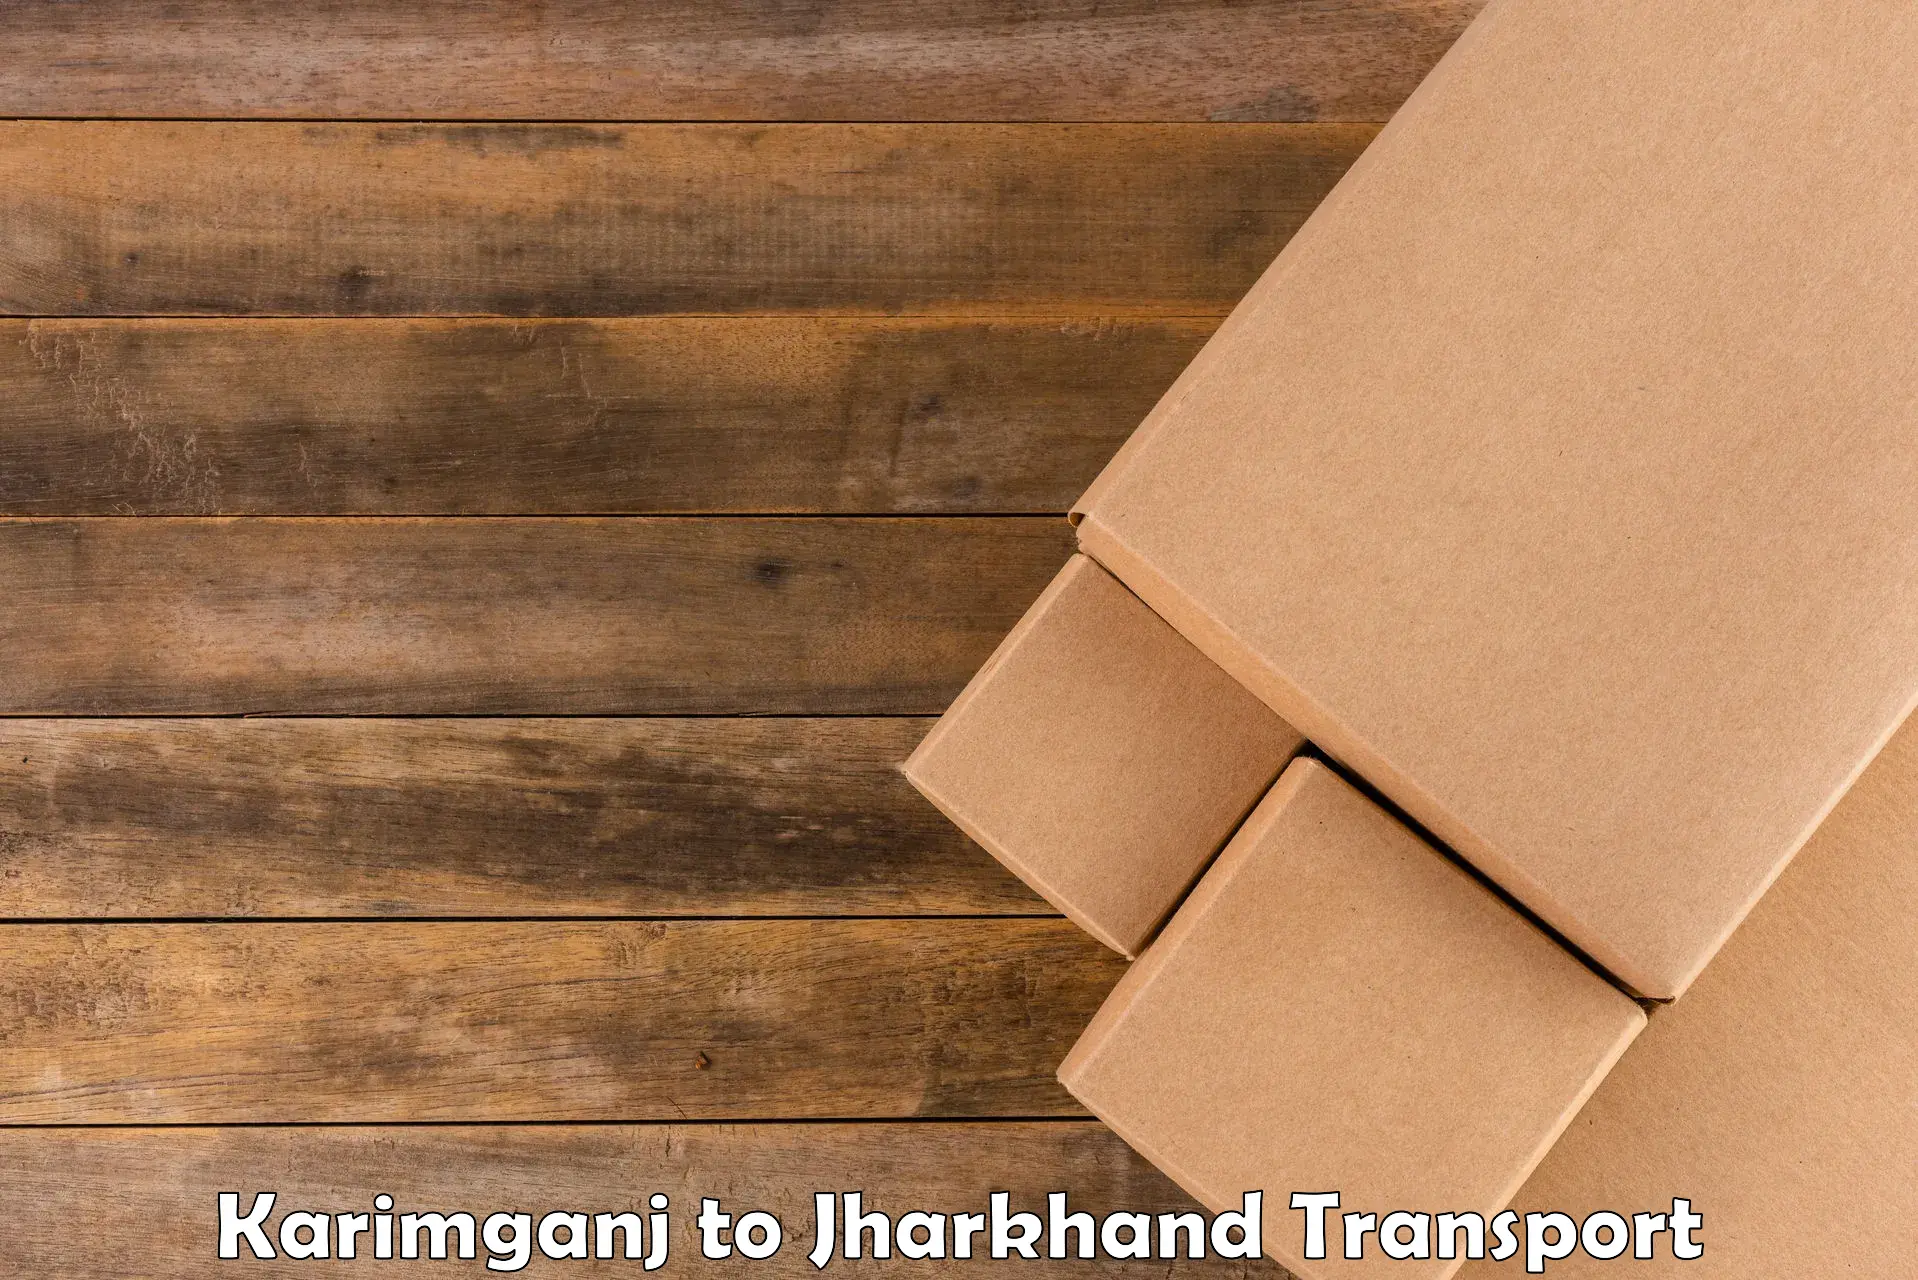 Furniture transport service Karimganj to Chandil